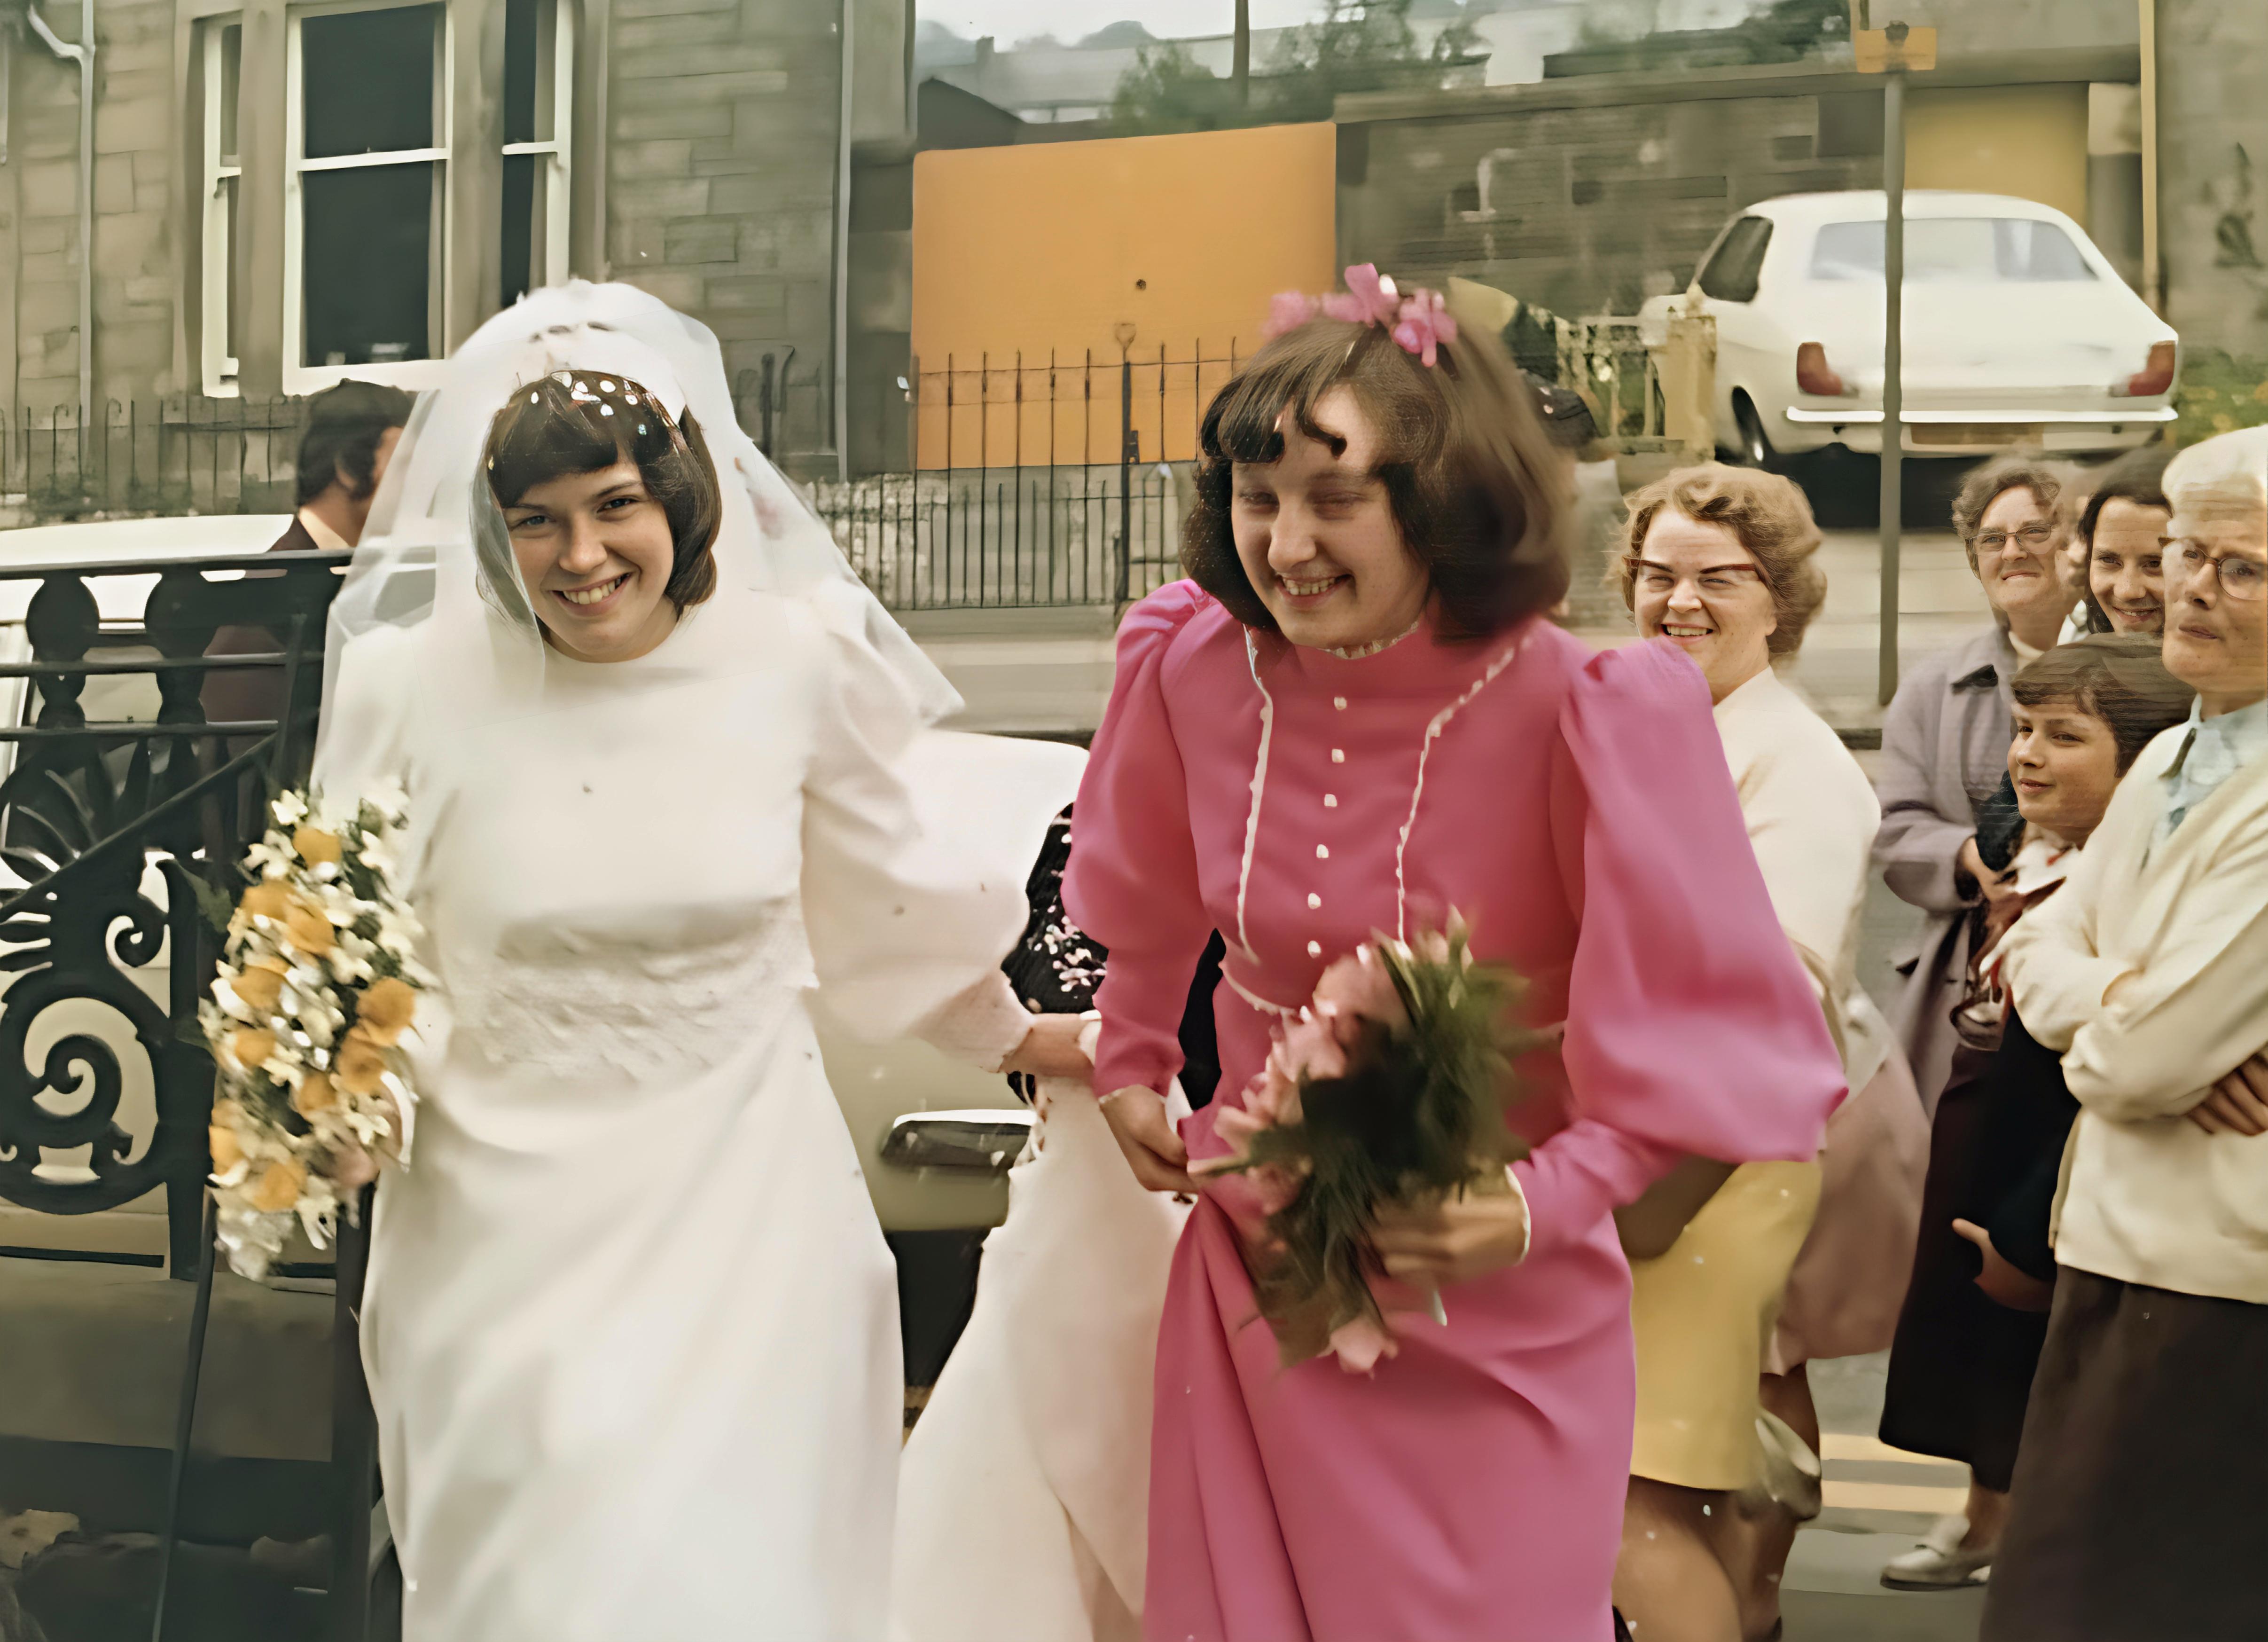 Anne and Bills wedding 1973